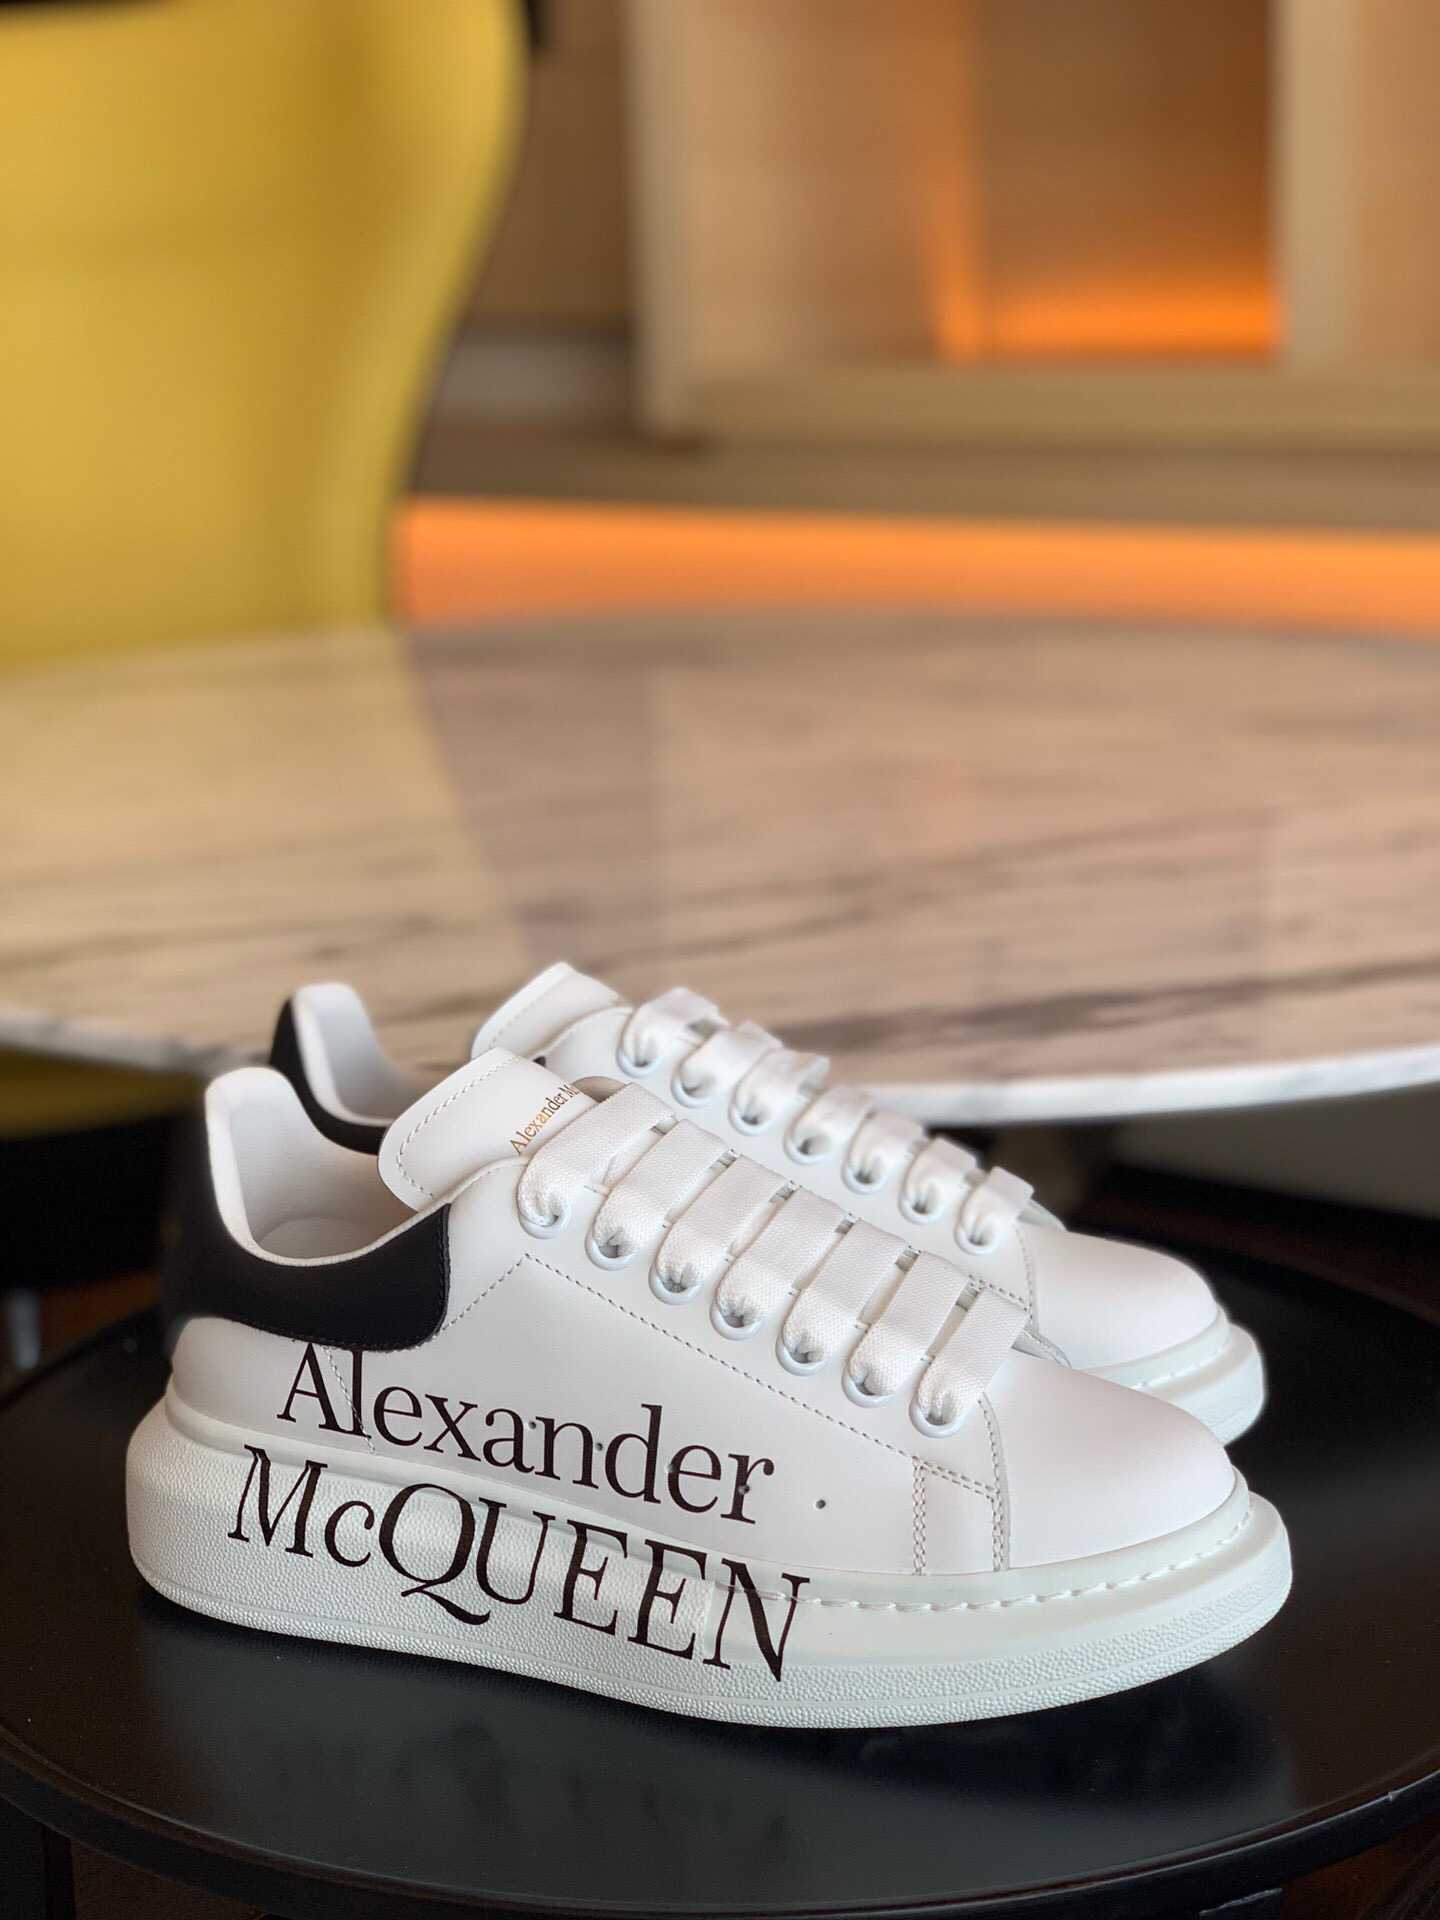 高仿麦昆男士运动鞋 麦昆运动鞋商城 AlexanderMcQueen 19ss升级版 阔型运动鞋 